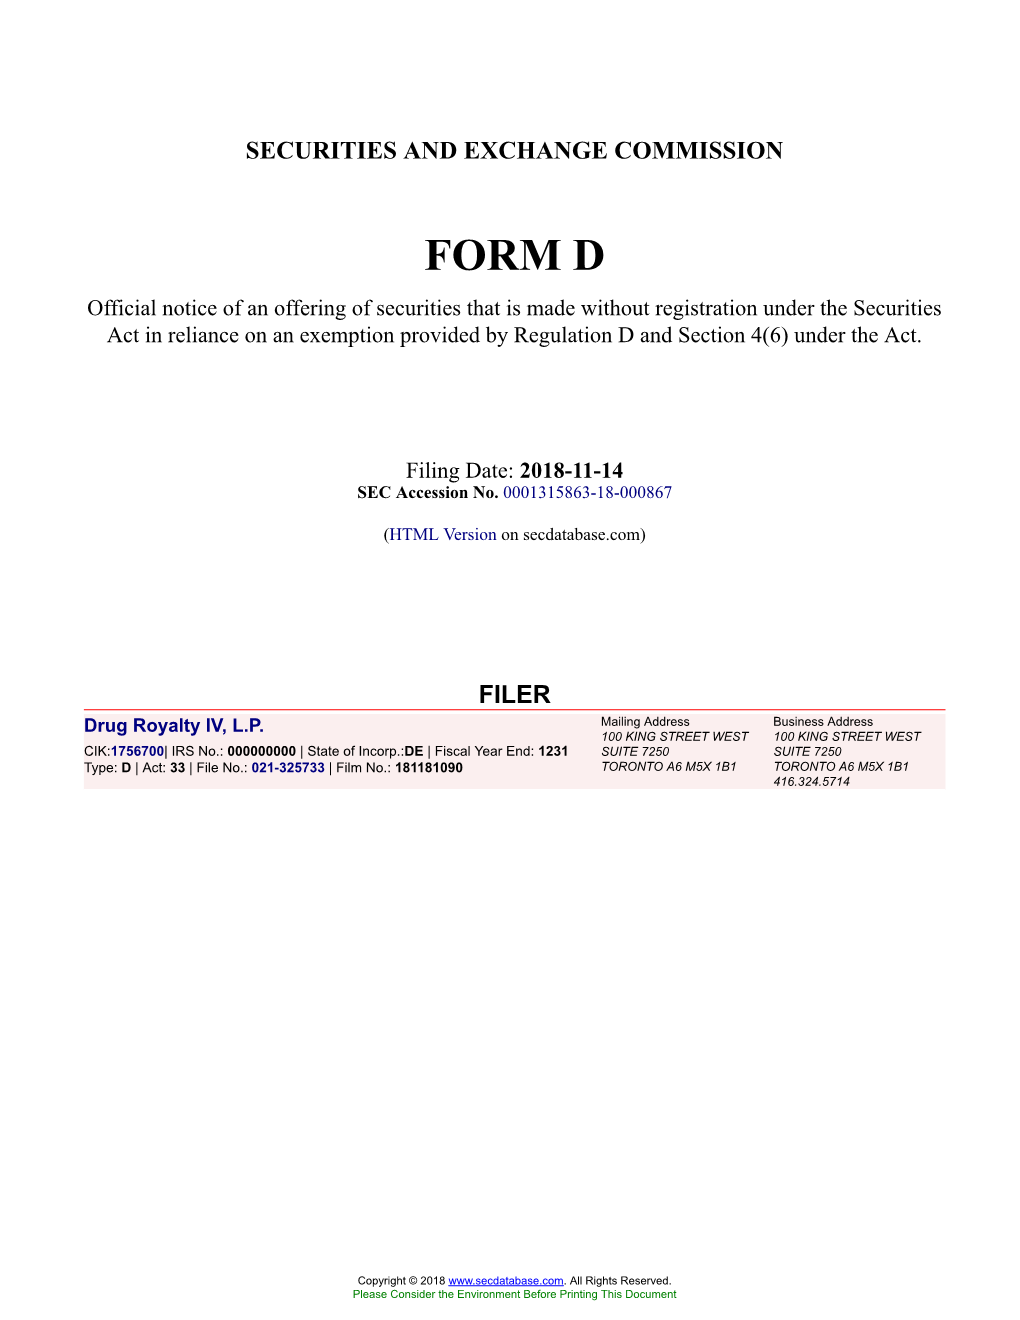 Drug Royalty IV, L.P. Form D Filed 2018-11-14